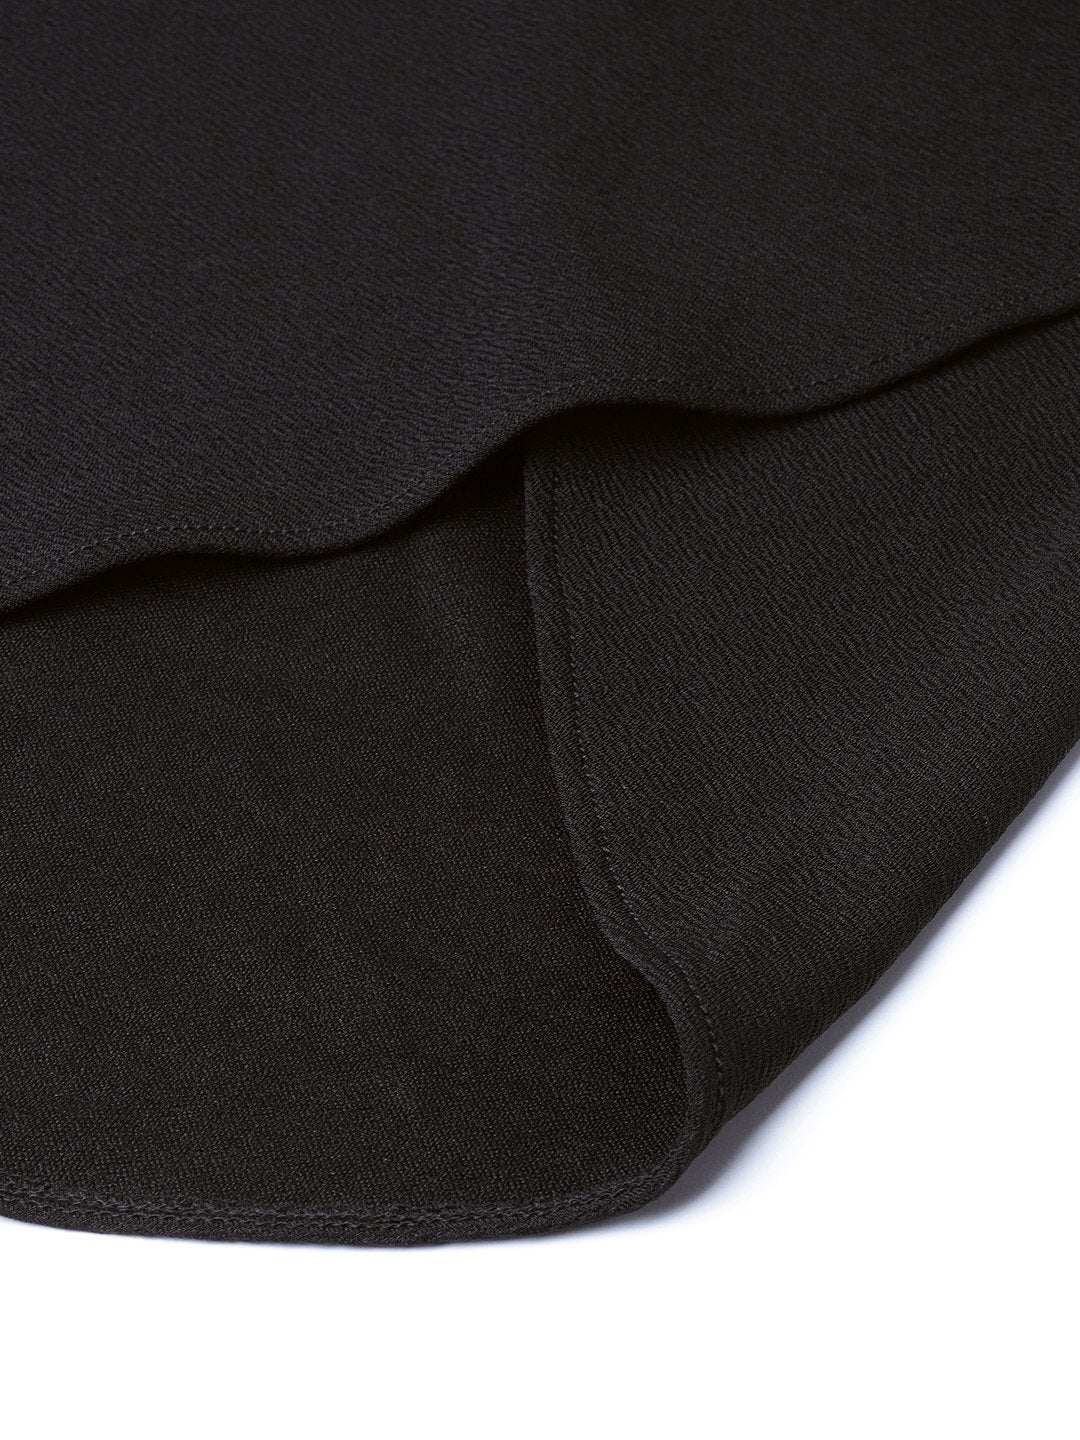 Women's Black Tulip Skirt - SASSAFRAS